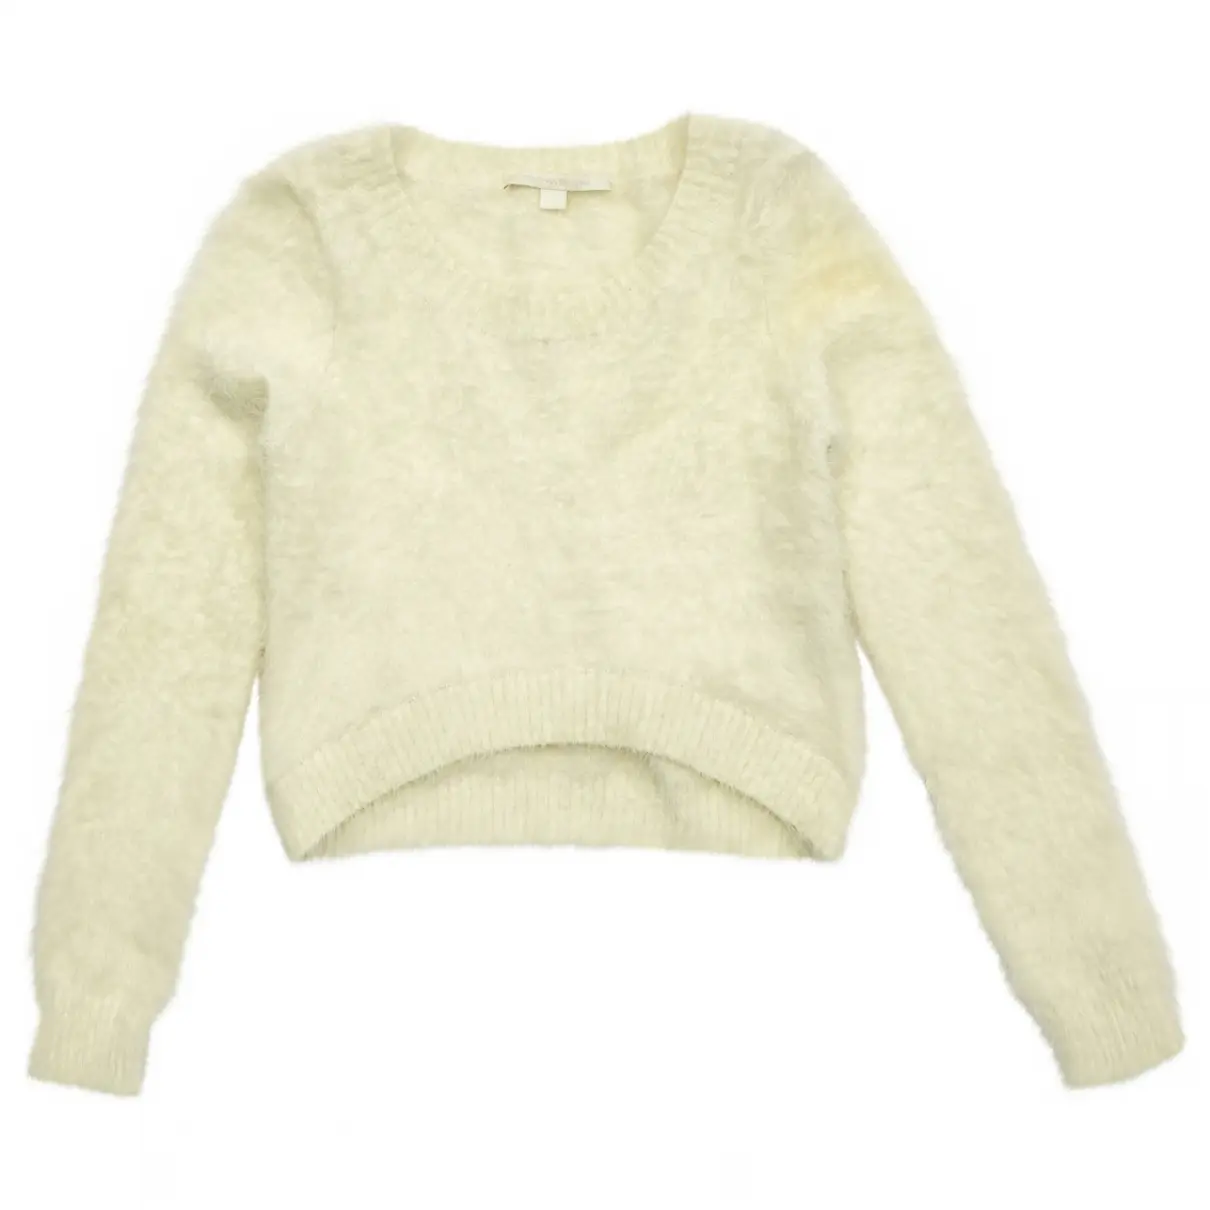 Sweater Jonathan Simkhai